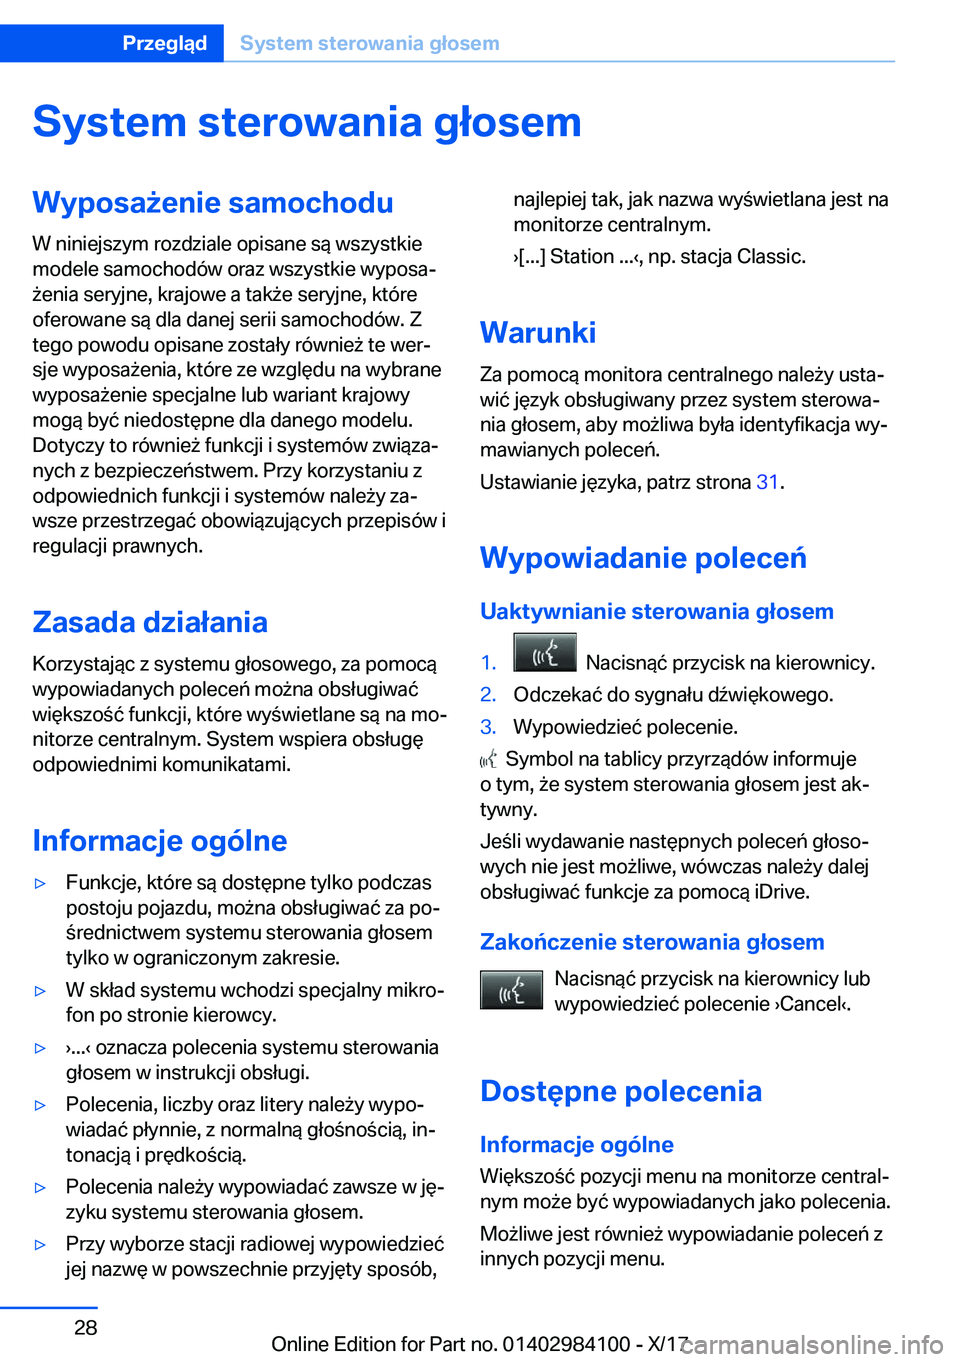 BMW 3 SERIES 2018  Instrukcja obsługi (in Polish) �S�y�s�t�e�m��s�t�e�r�o�w�a�n�i�a��g�ł�o�s�e�m�W�y�p�o�s�a9�e�n�i�e��s�a�m�o�c�h�o�d�u
�W� �n�i�n�i�e�j�s�z�y�m� �r�o�z�d�z�i�a�l�e� �o�p�i�s�a�n�e� �s�